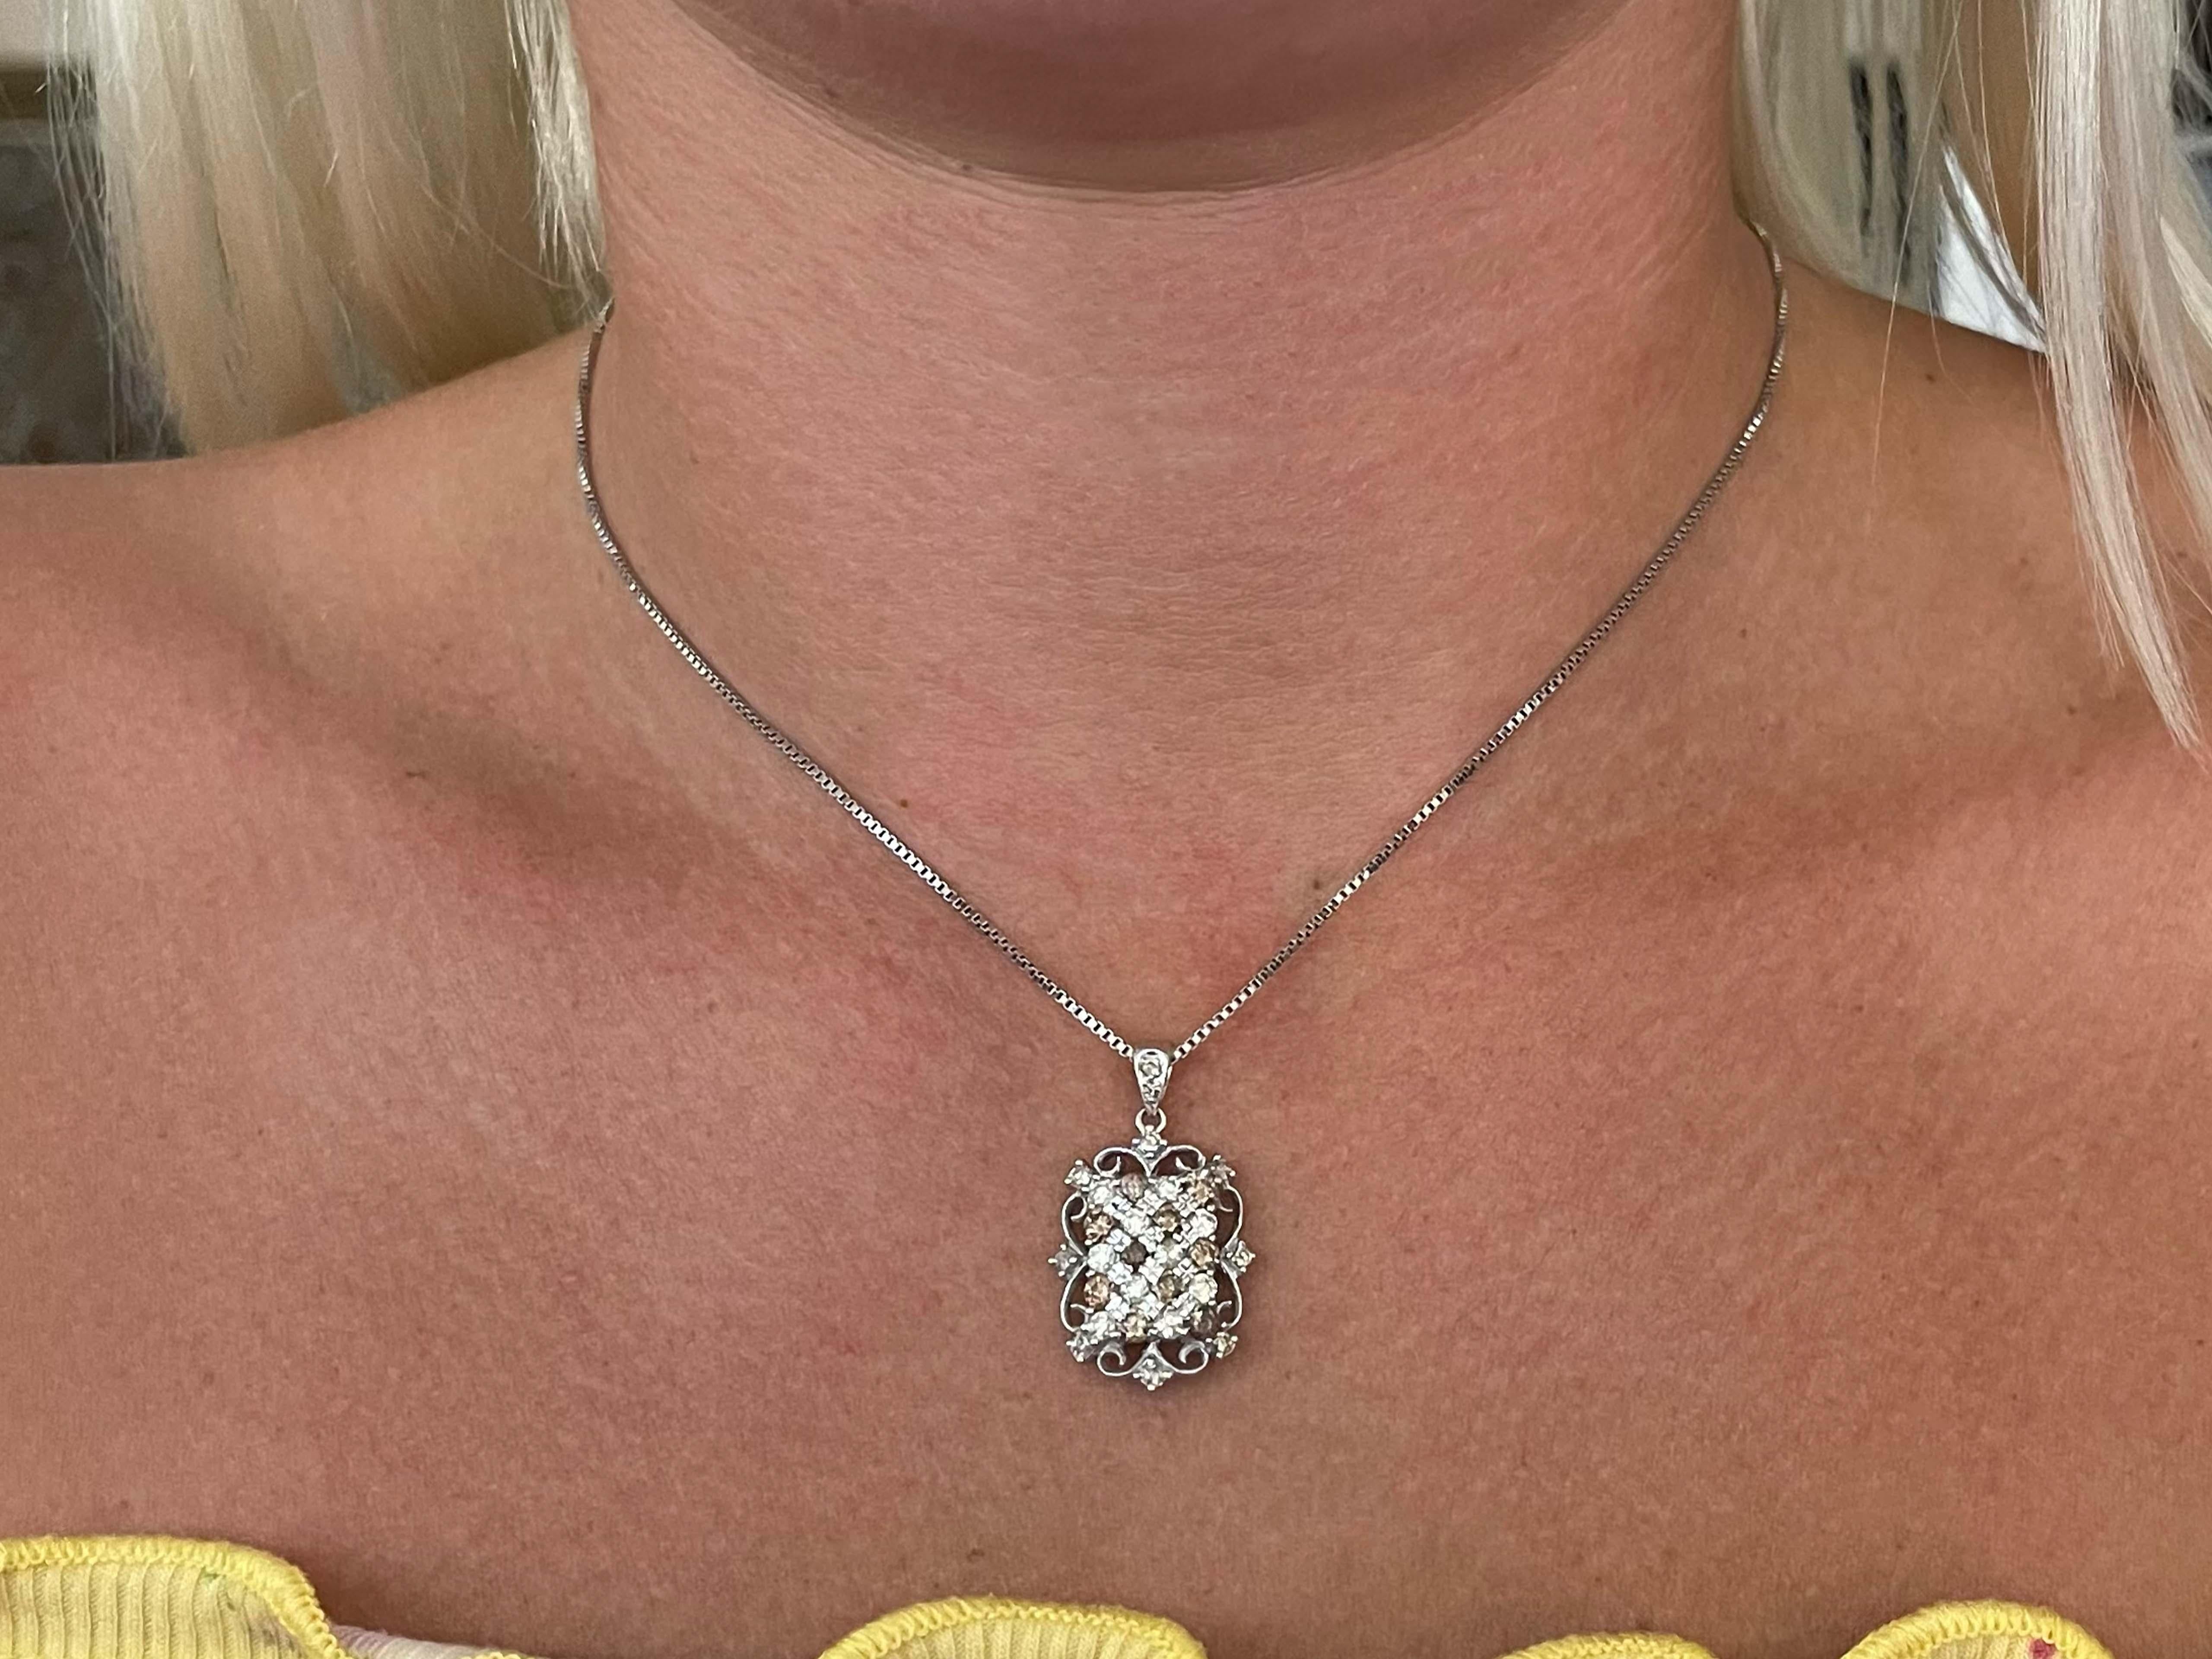 Dieser Anhänger ist mit seinen weißen und schokoladenfarbenen Diamanten wirklich einzigartig. Die Halskette ist mit runden Diamanten im Brillantschliff von ca. 2,00 Karat besetzt, die ein endloses Funkeln erzeugen. Die weißen Diamanten sind von der